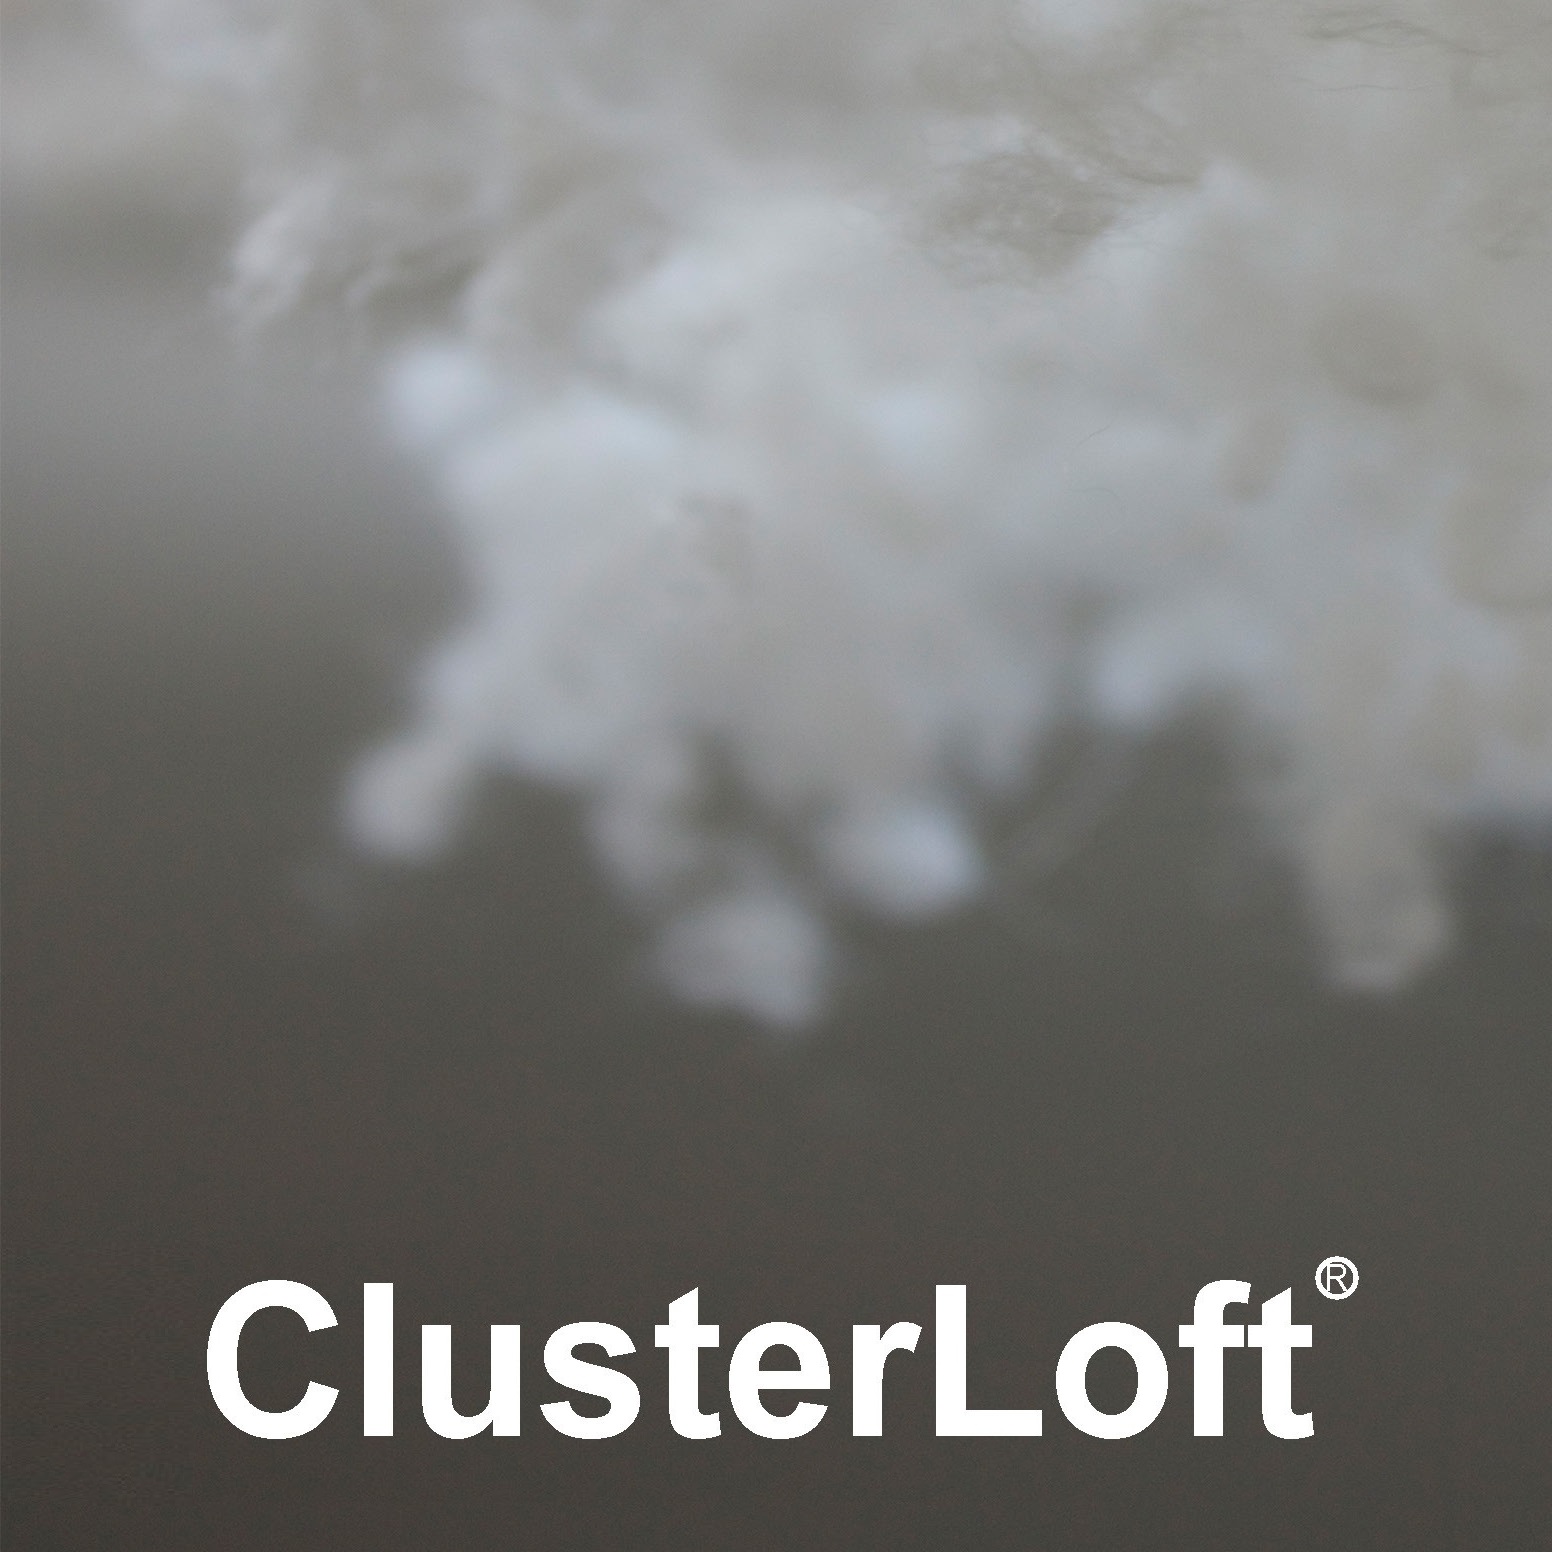 Qingdao ClusterLoft Co Ltd